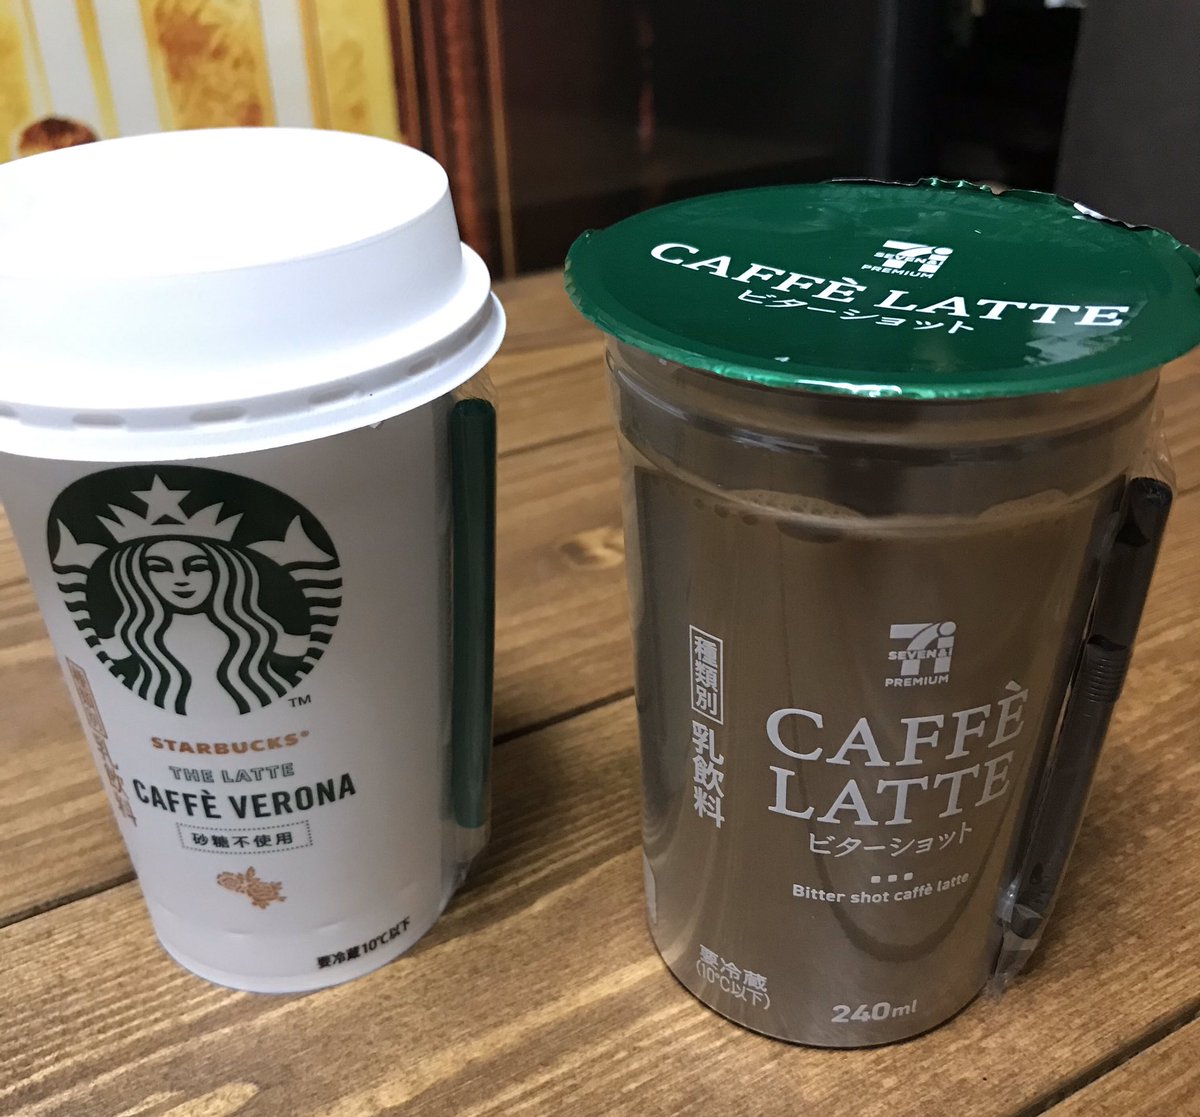 スターバックス コーヒー 本日 12 17 よりスターバックス チルドカップ ザ ラテ カフェ ベロナ が全国のセブン イレブンで新登場 こだわりのコーヒー豆 カフェ ベロナ を使用した コーヒーの味わいを贅沢に楽しめるカフェラテです T Co